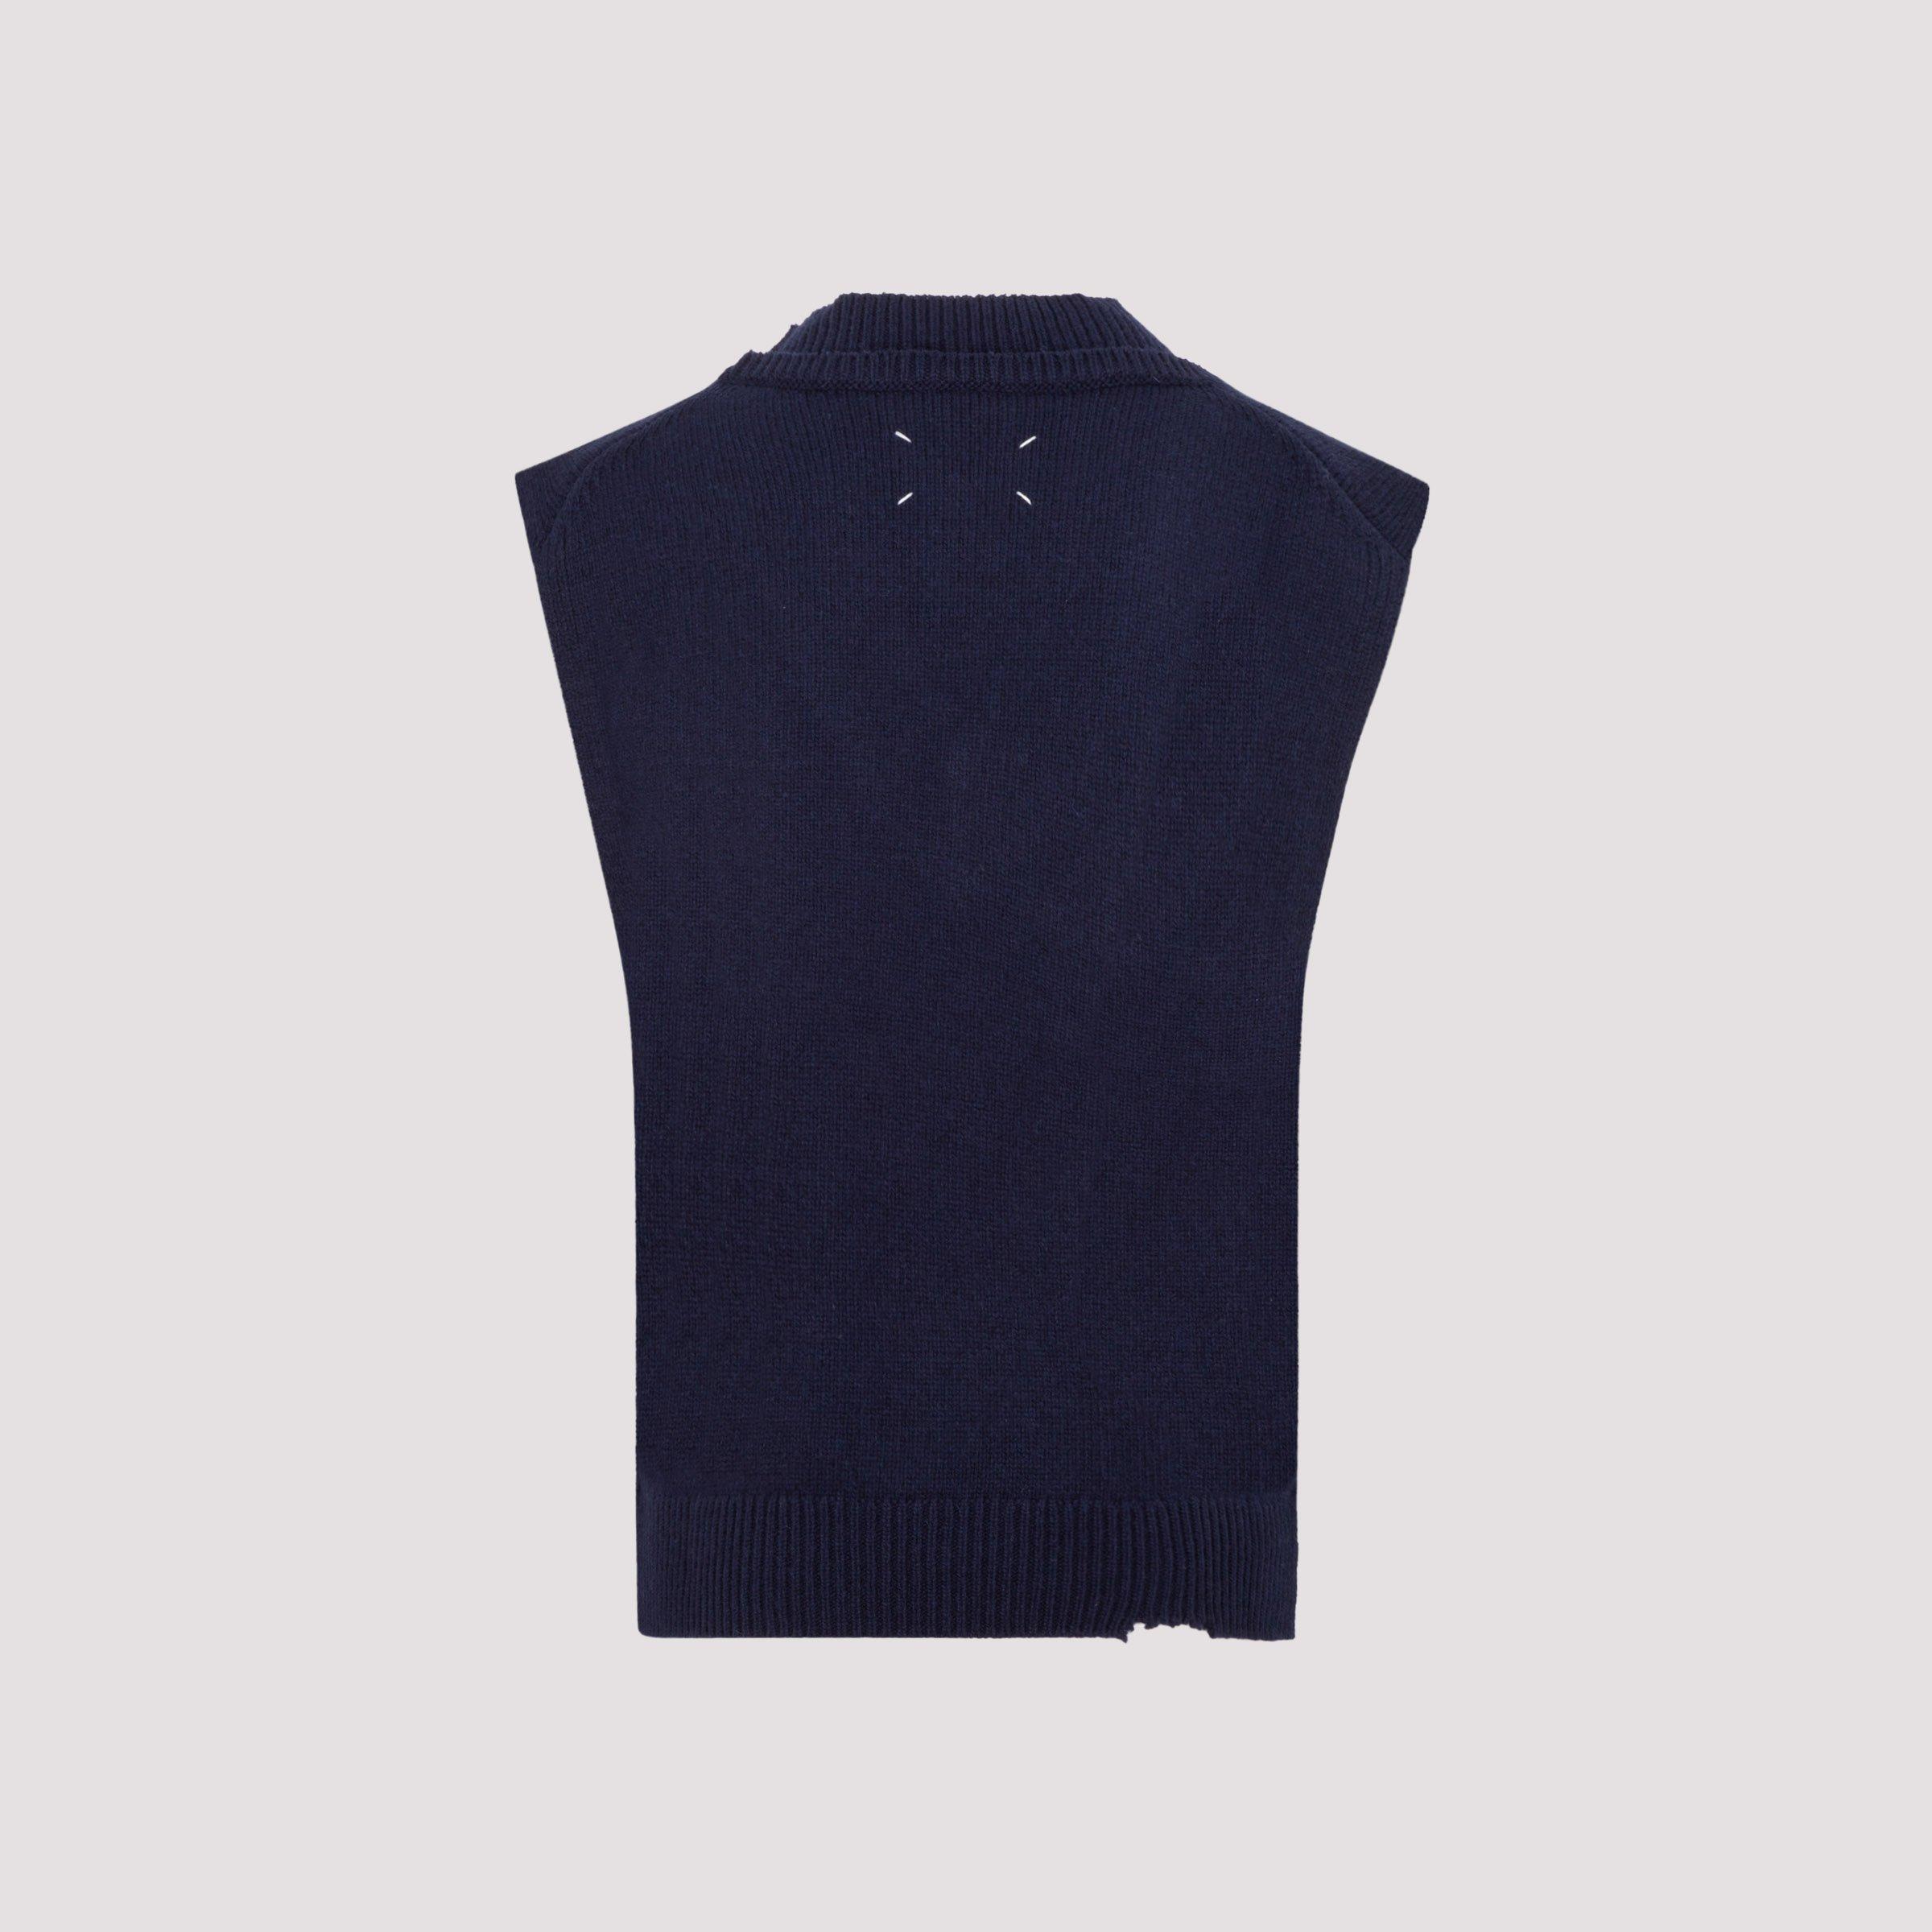 Maison Margiela Wool Sleeveless Sweater in Black (Blue) Men - Lyst